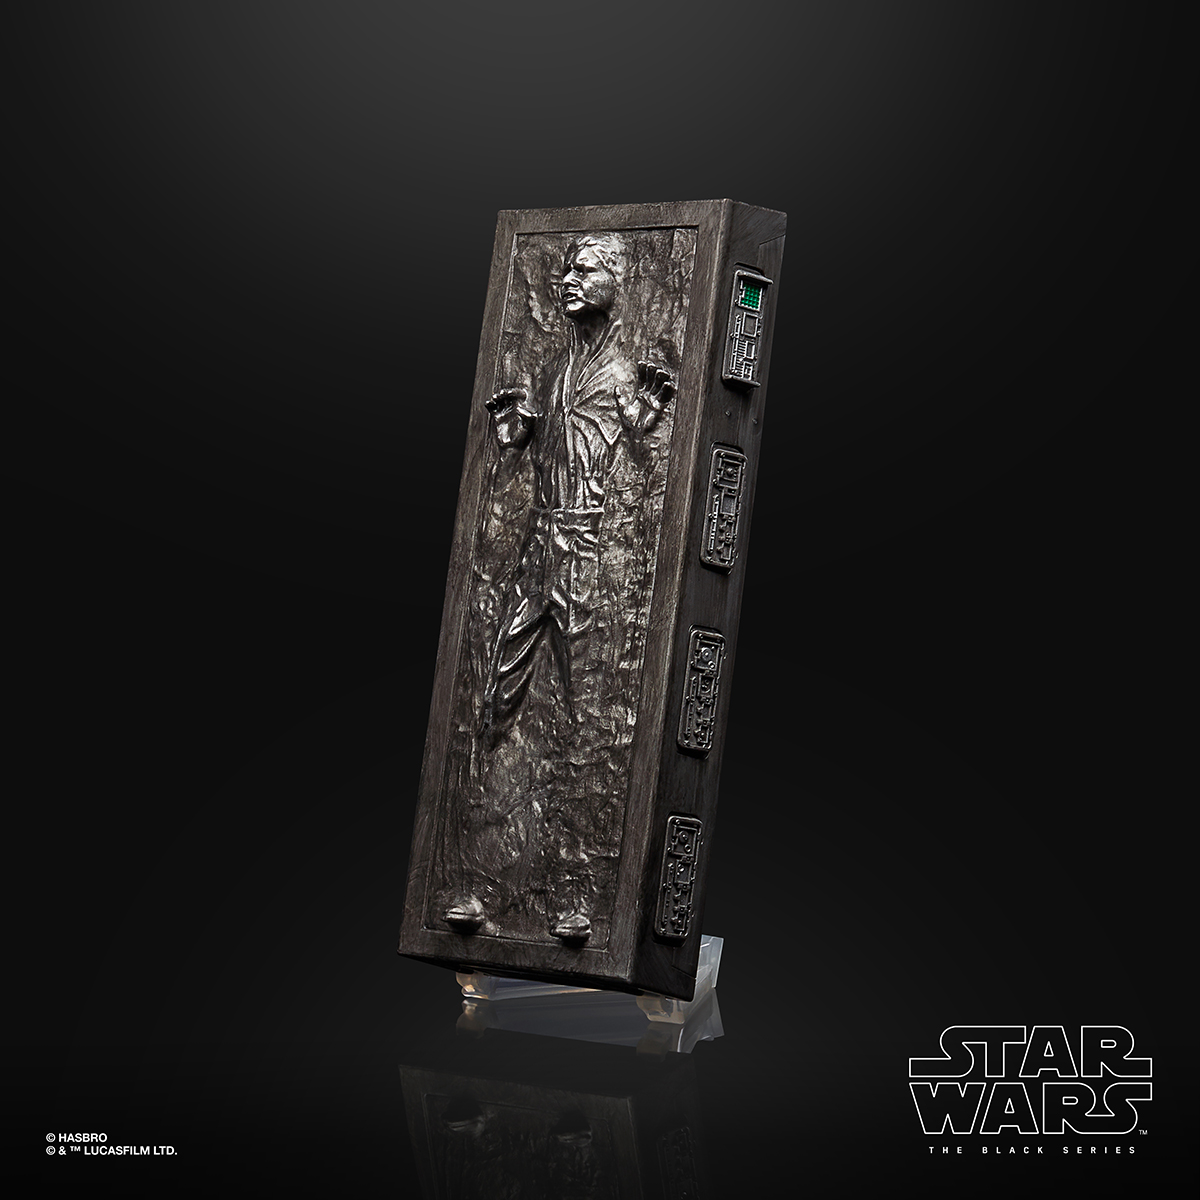 Star Wars The Black Series 6 Inch Han Solo Carbonite Figure Oop 5